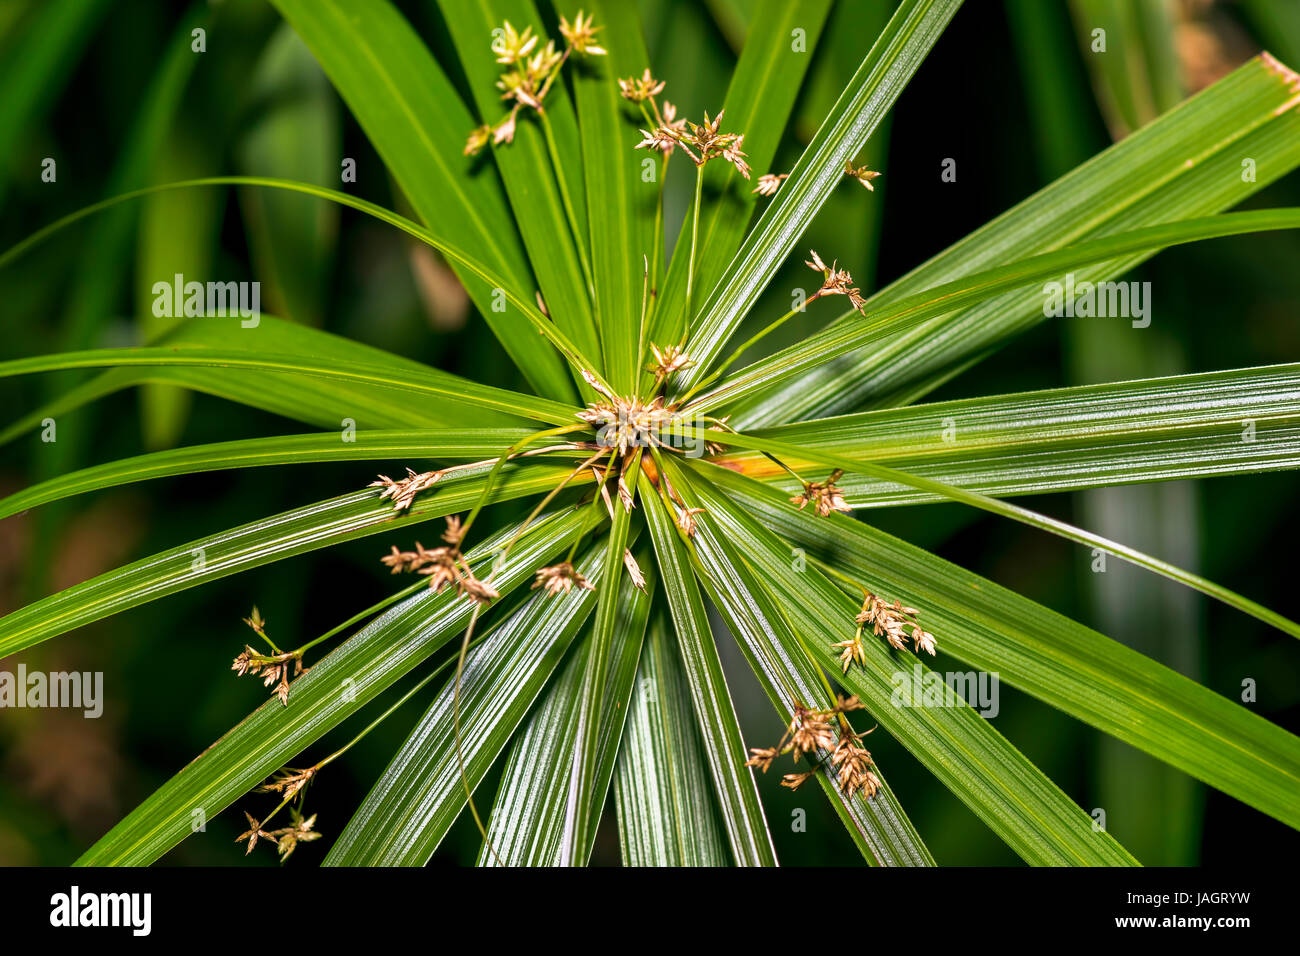 Nahaufnahme eines schönen Cyperus Papyrus Pflanze Kopf. Cyperus Papyrus ist  eine Art von aquatischen blühende Pflanze aus der Familie der  Sauergrasgewächse Cyperaceae Stockfotografie - Alamy